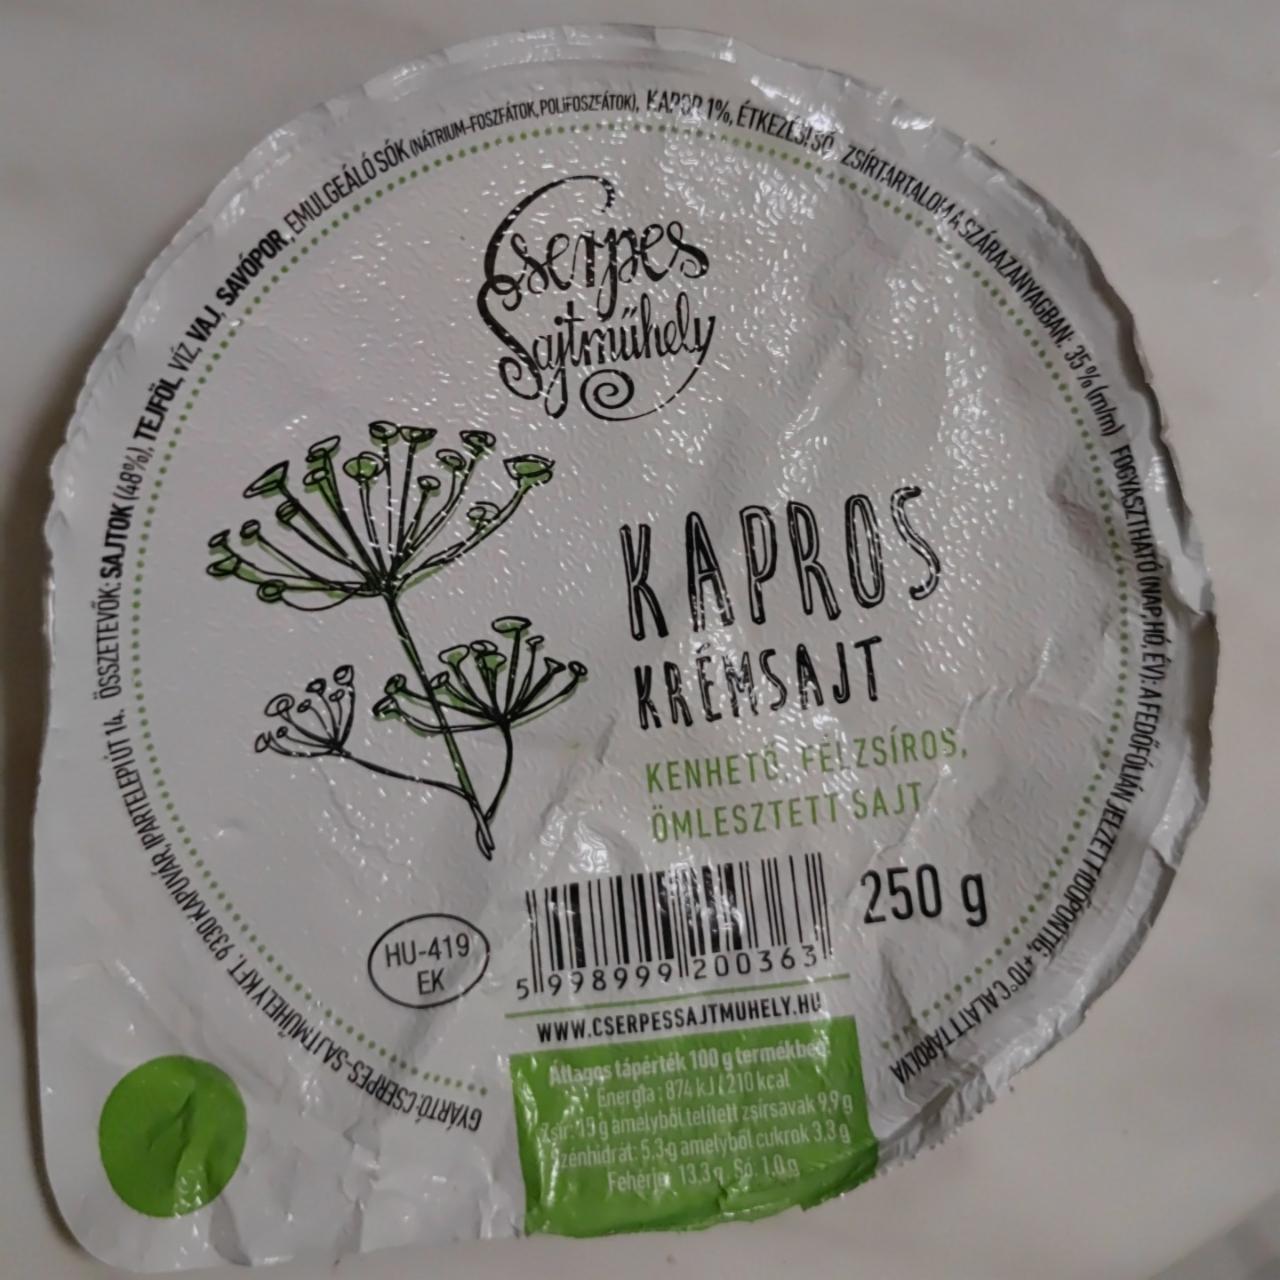 Képek - Kapros krémsajt Cserpes sajtműhely